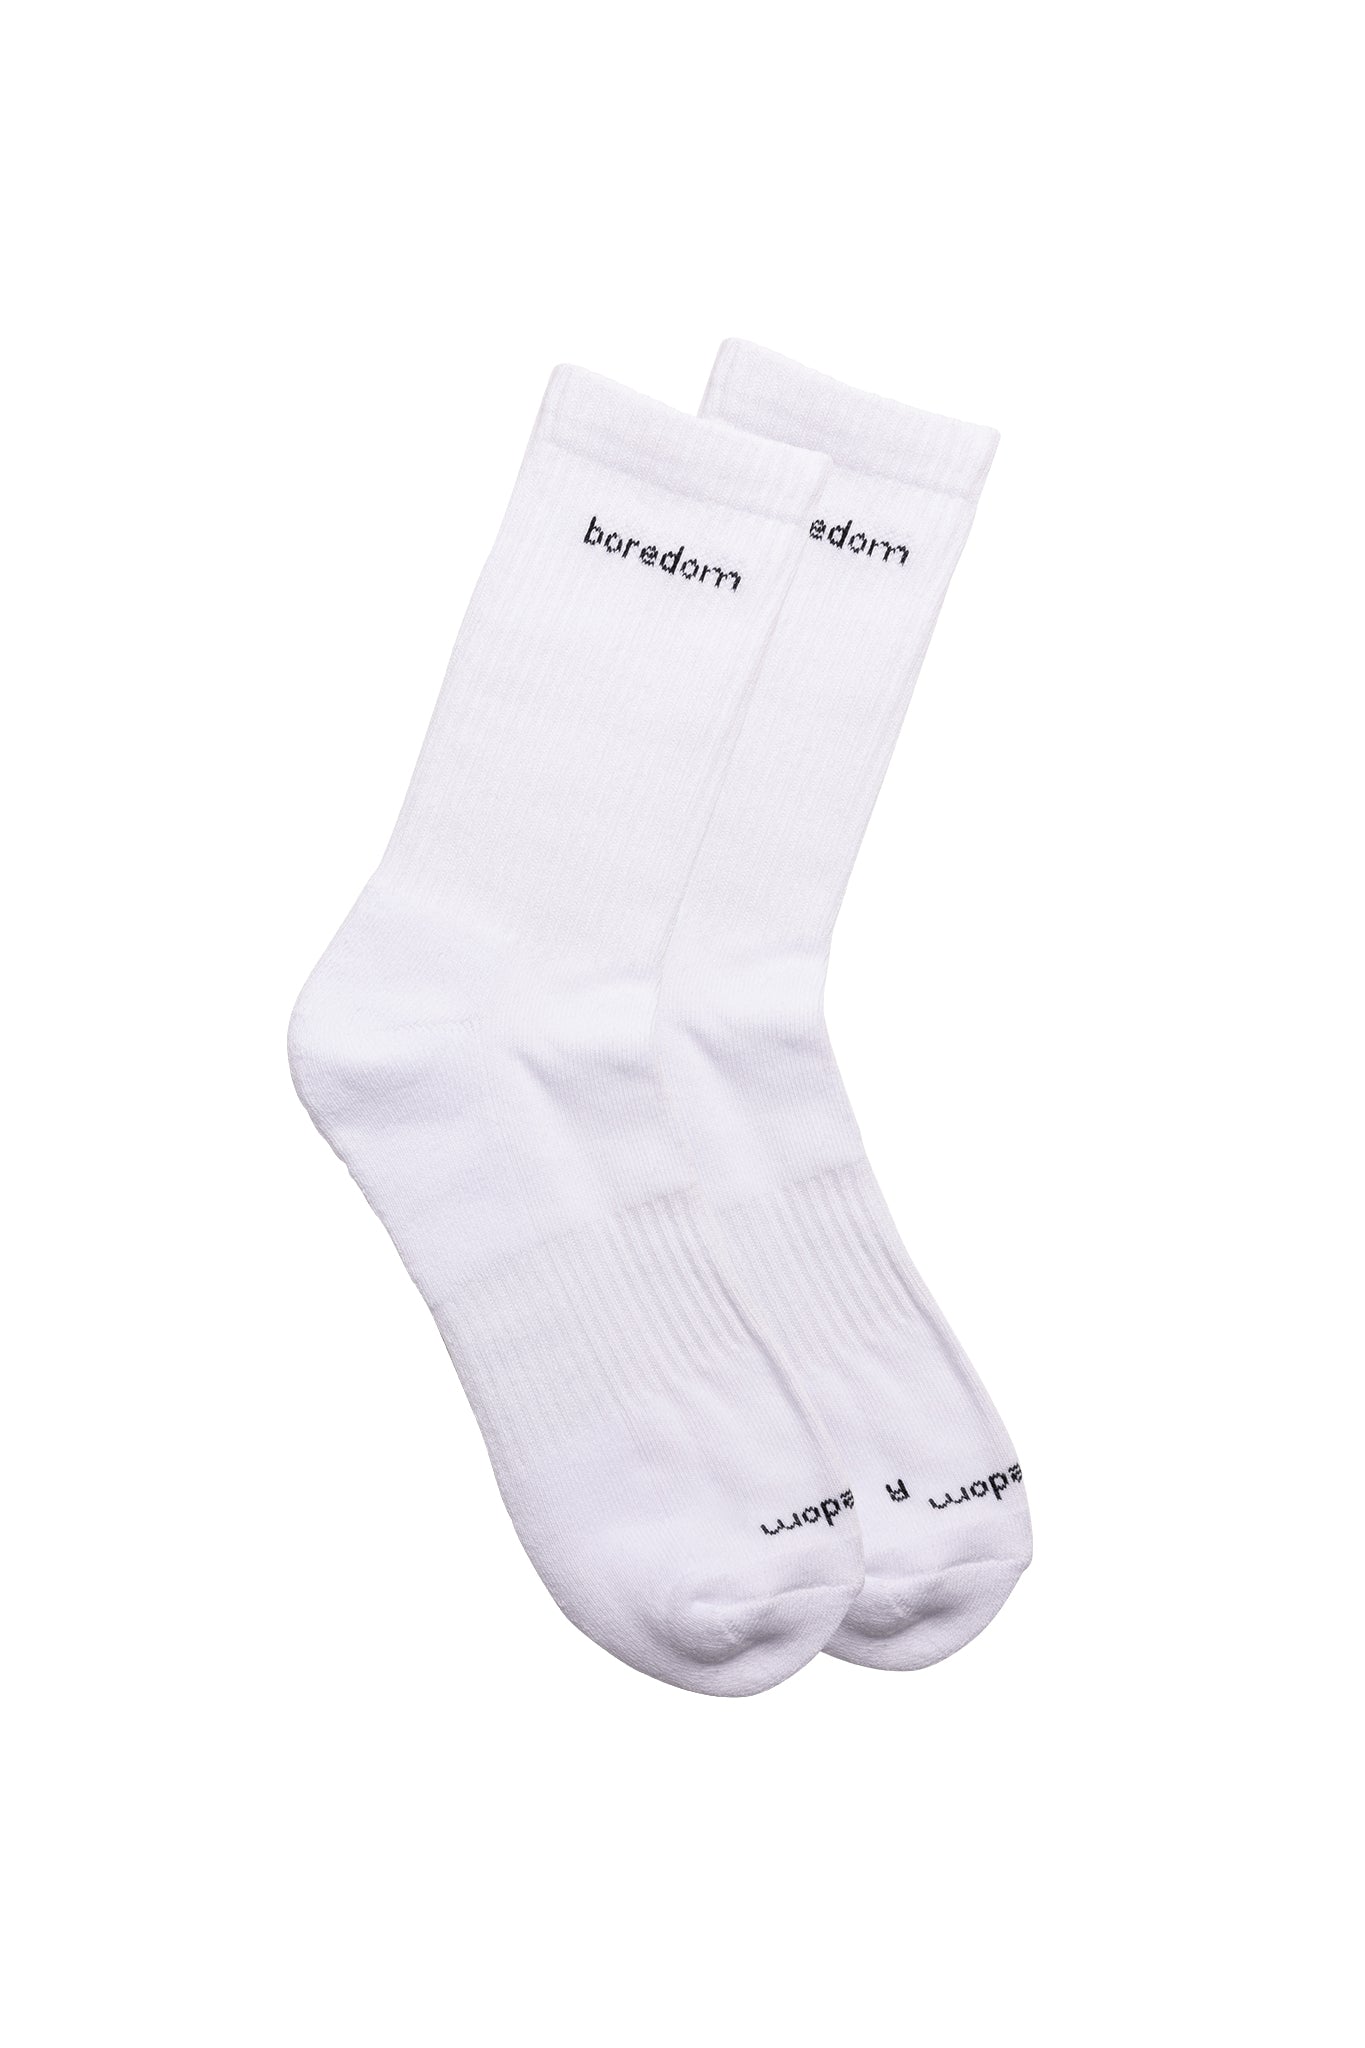 Word Mark 2-Pack of Socks - White